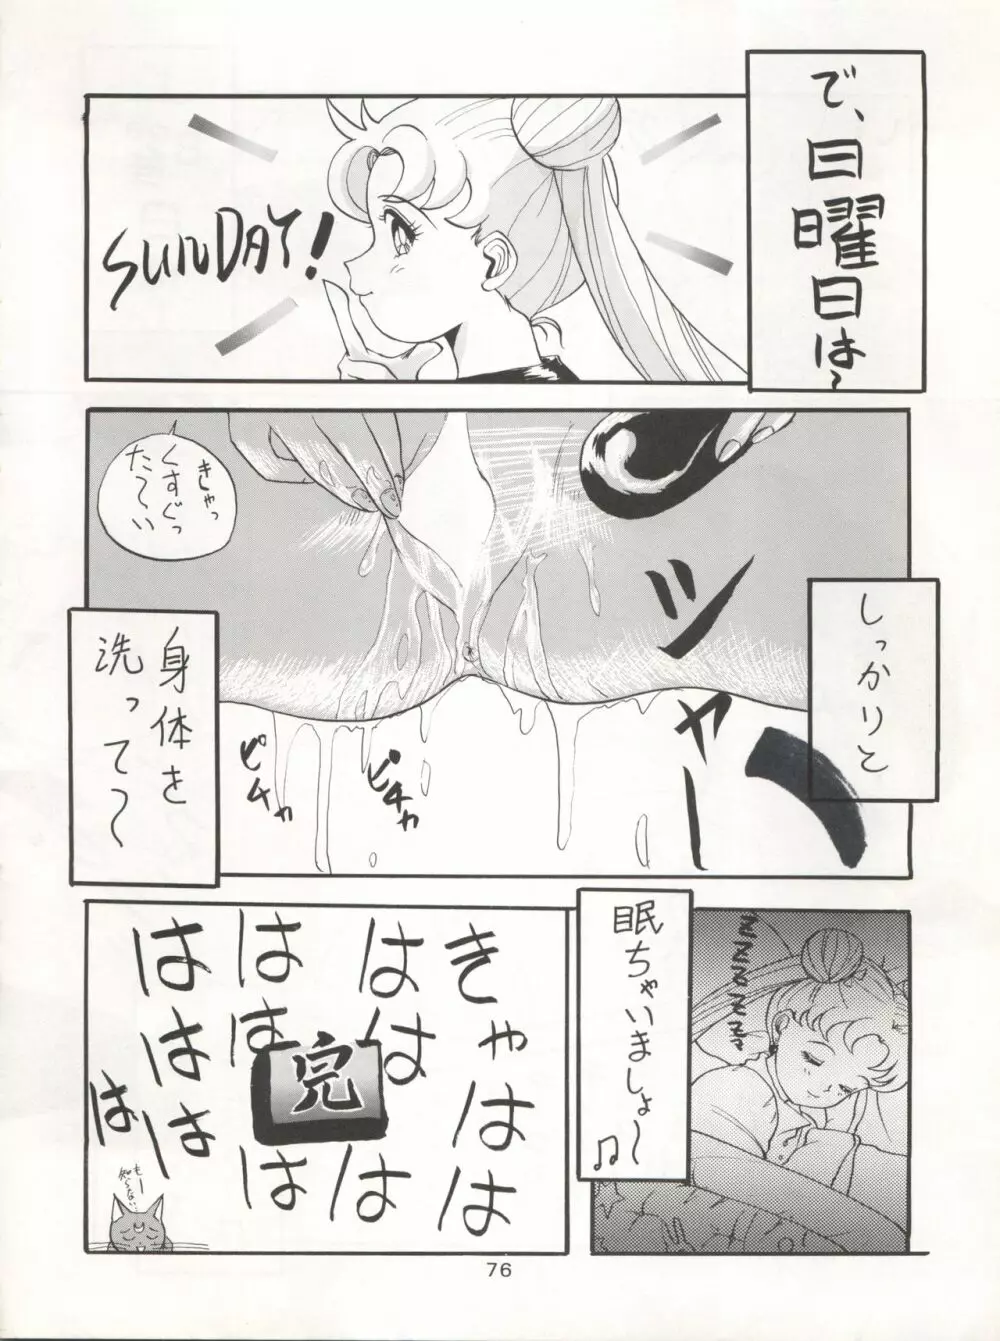 KATZE 7 上巻 - page77